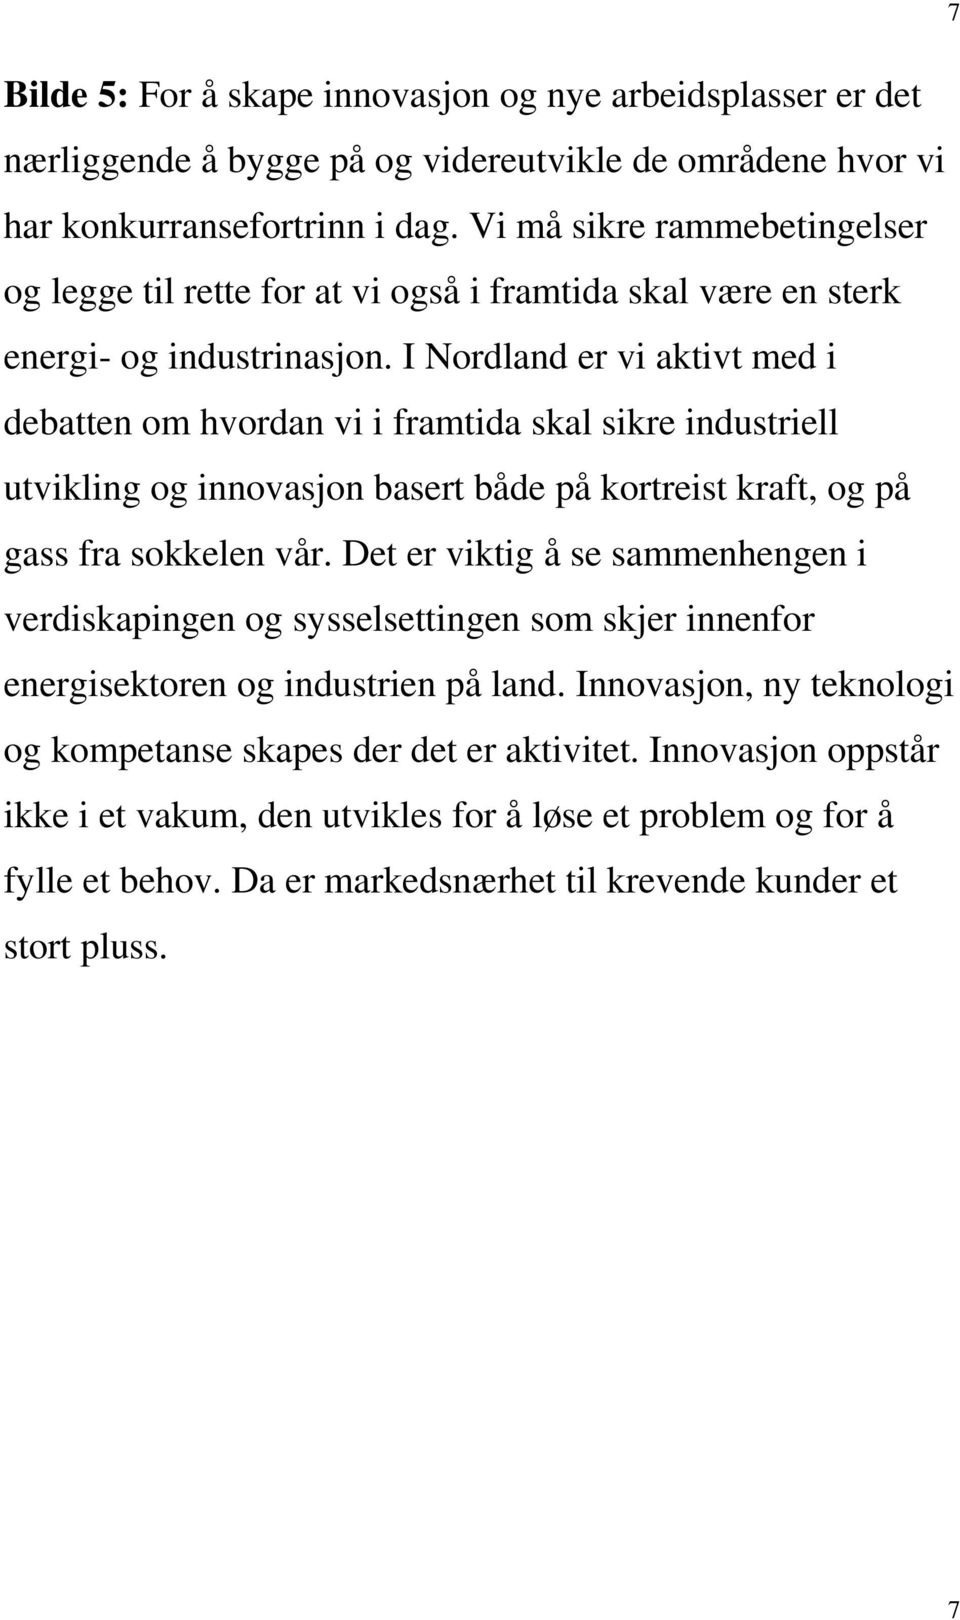 I Nordland er vi aktivt med i debatten om hvordan vi i framtida skal sikre industriell utvikling og innovasjon basert både på kortreist kraft, og på gass fra sokkelen vår.